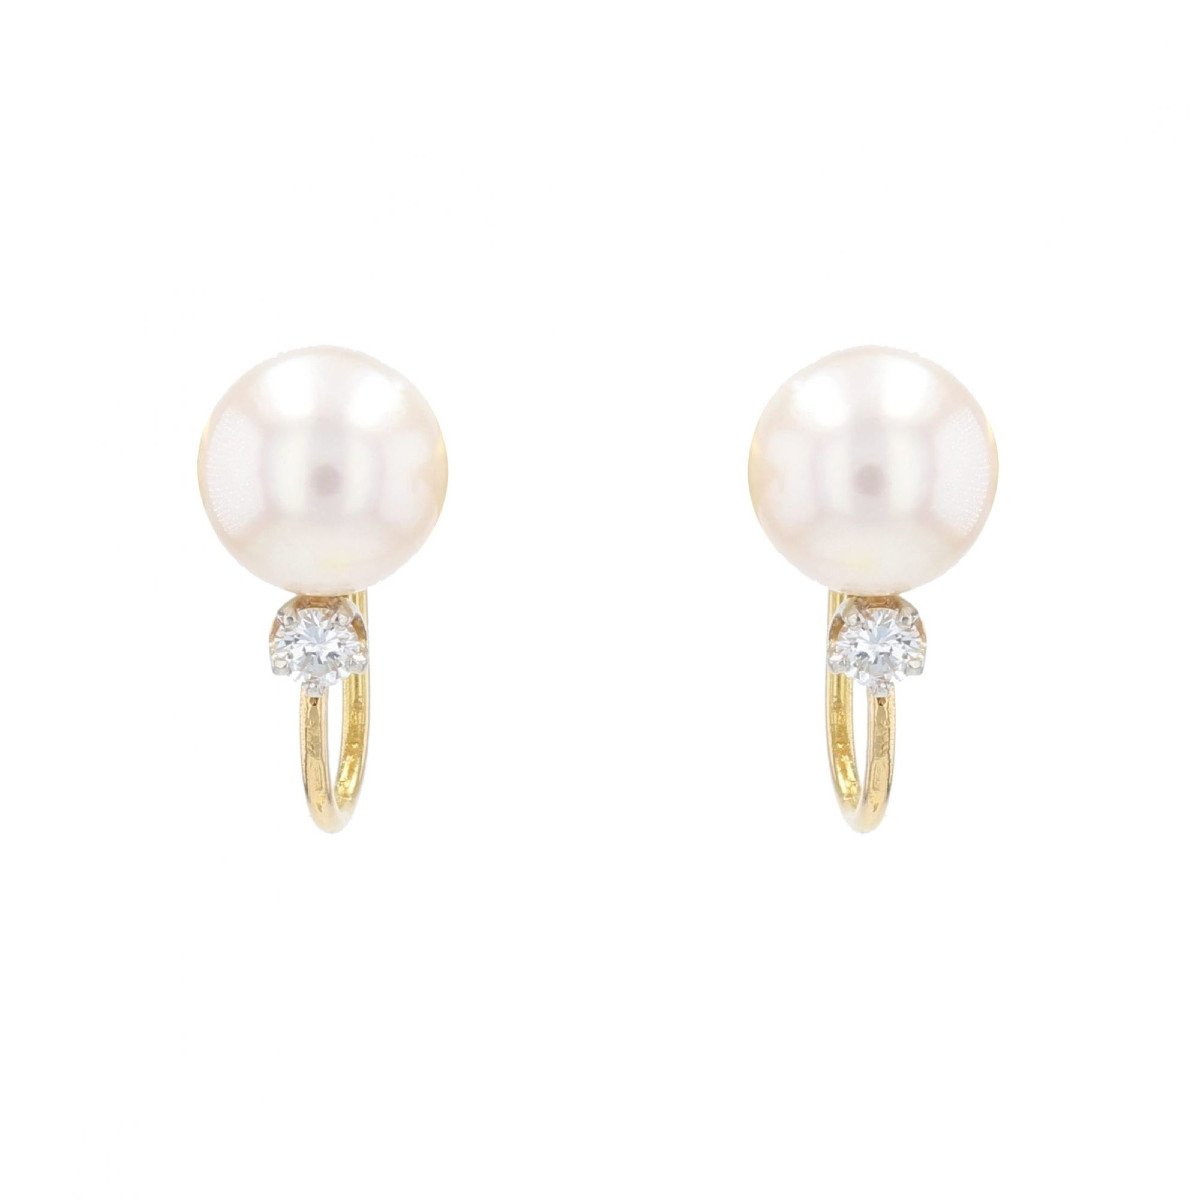 Boucles d'Oreilles Perles Diamants Pour Oreilles Non Percées